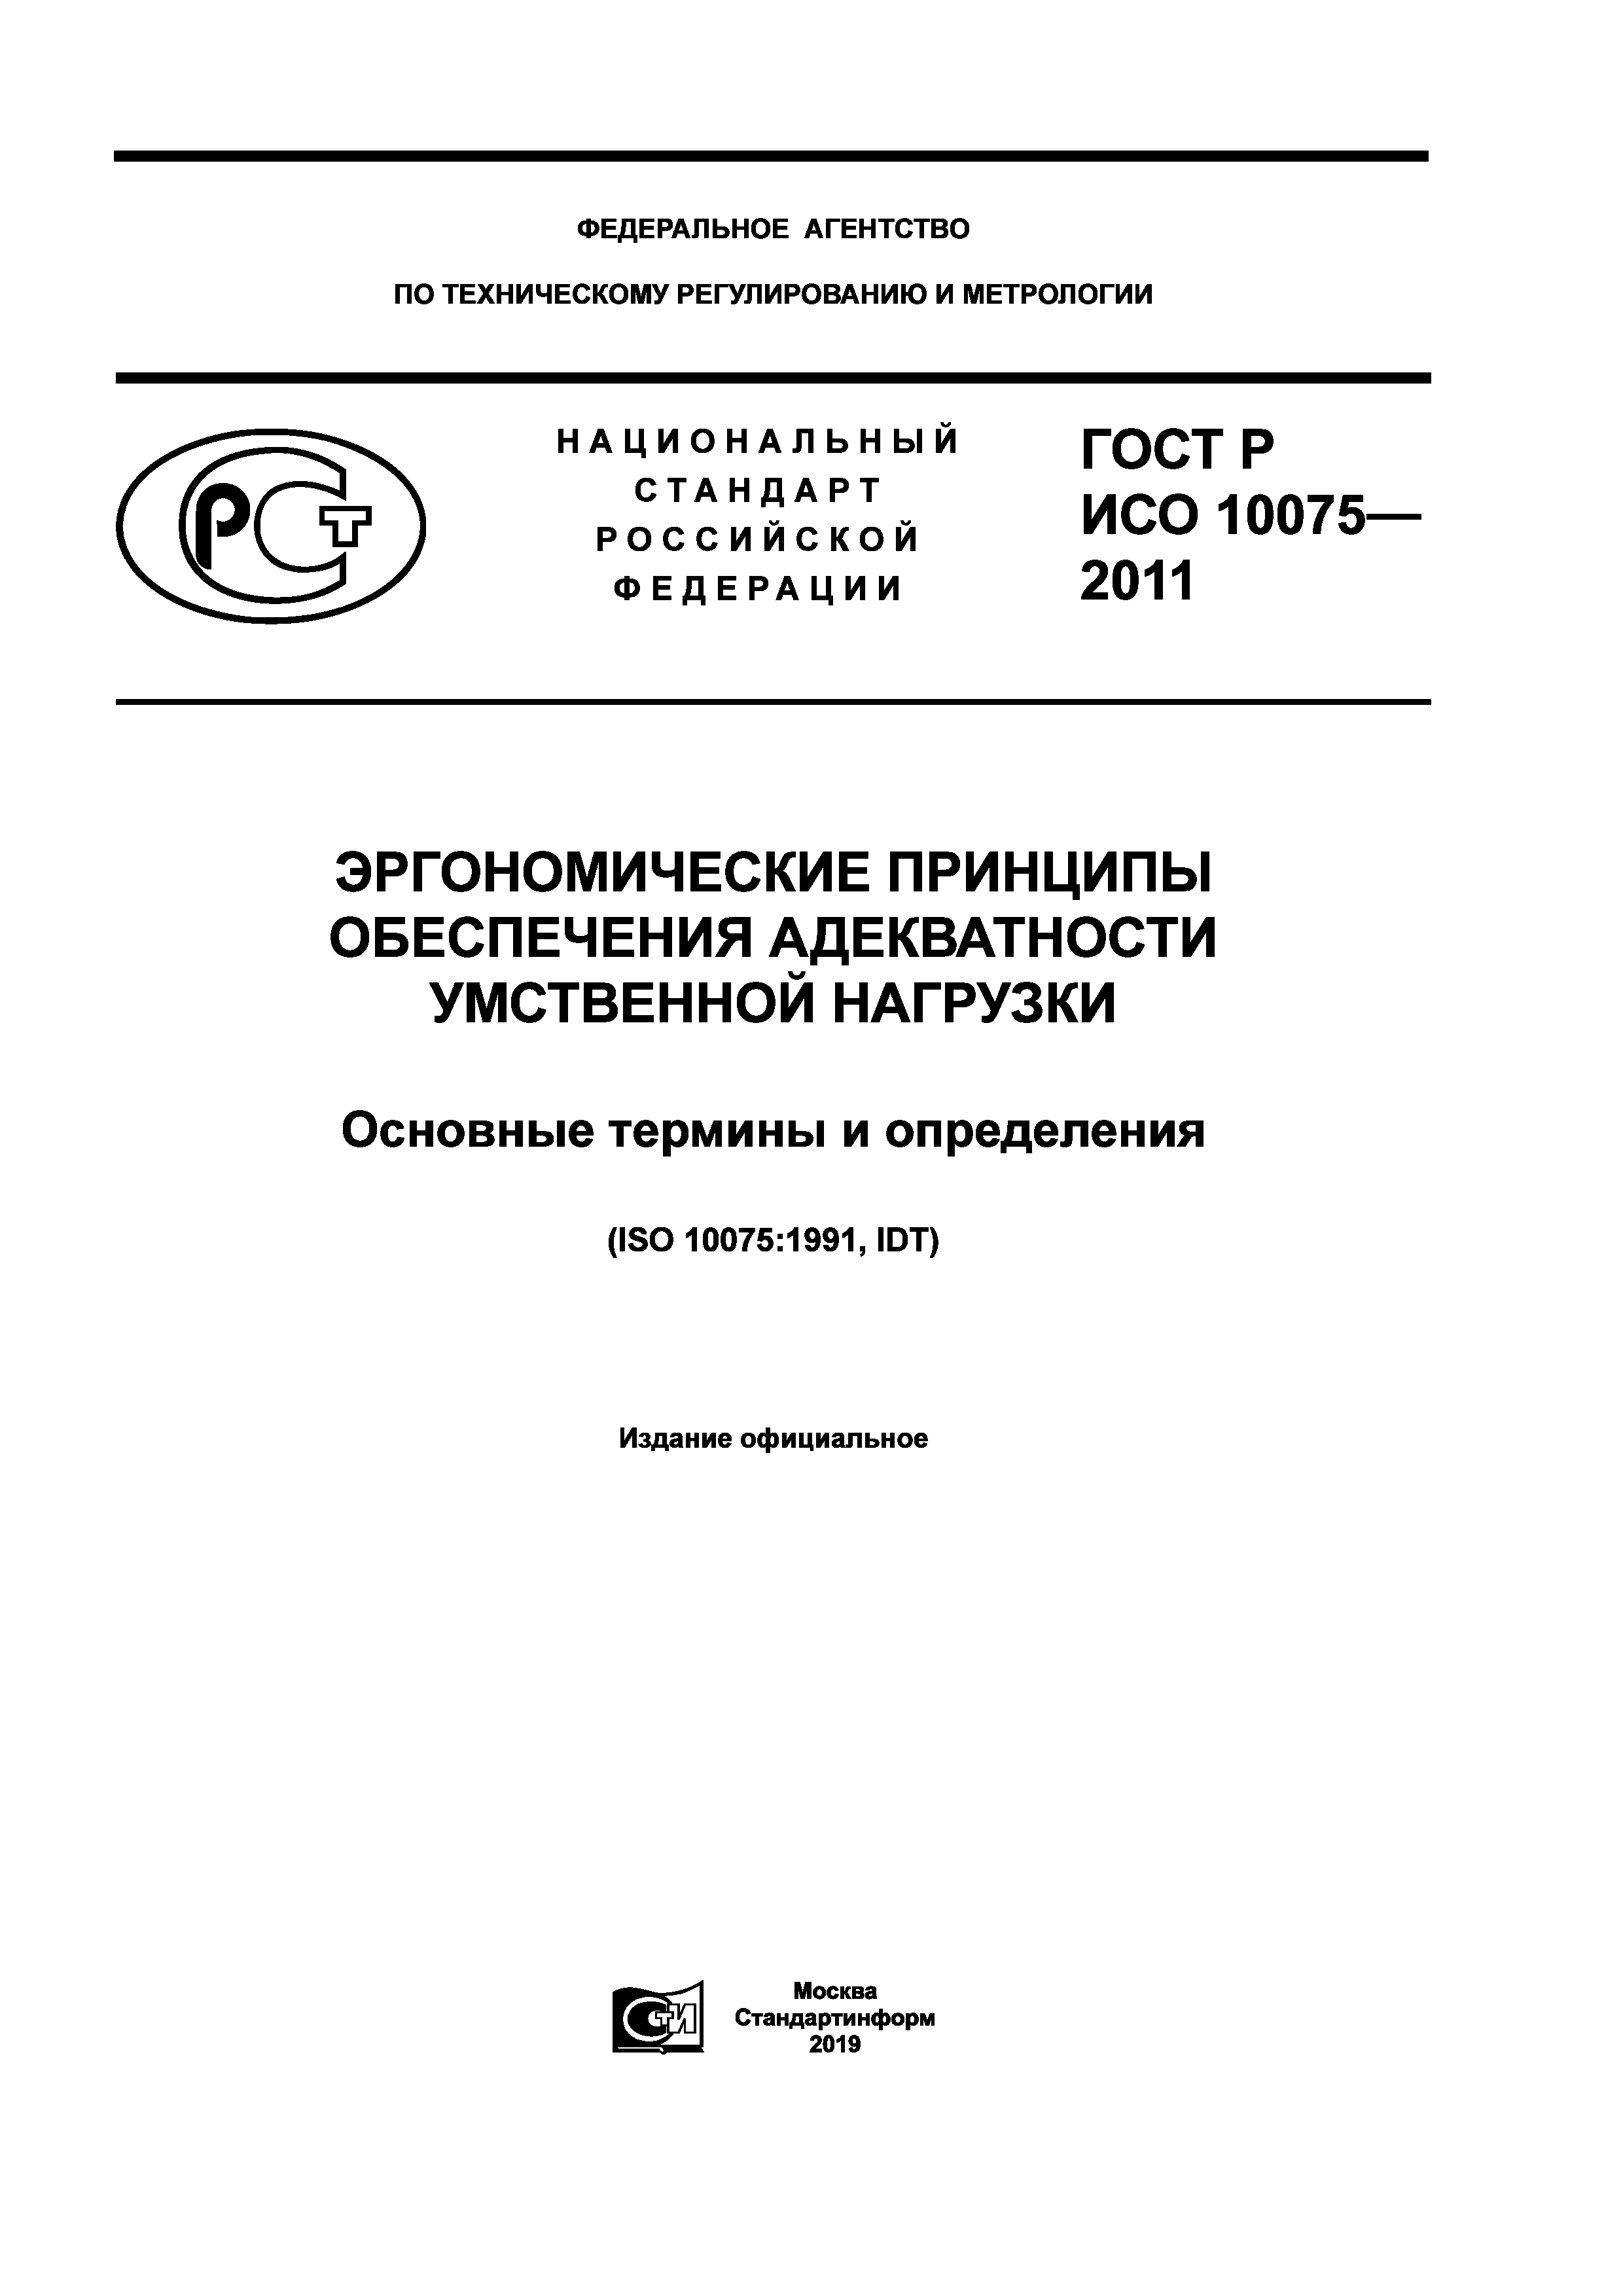 ГОСТ Р ИСО 10075-2011